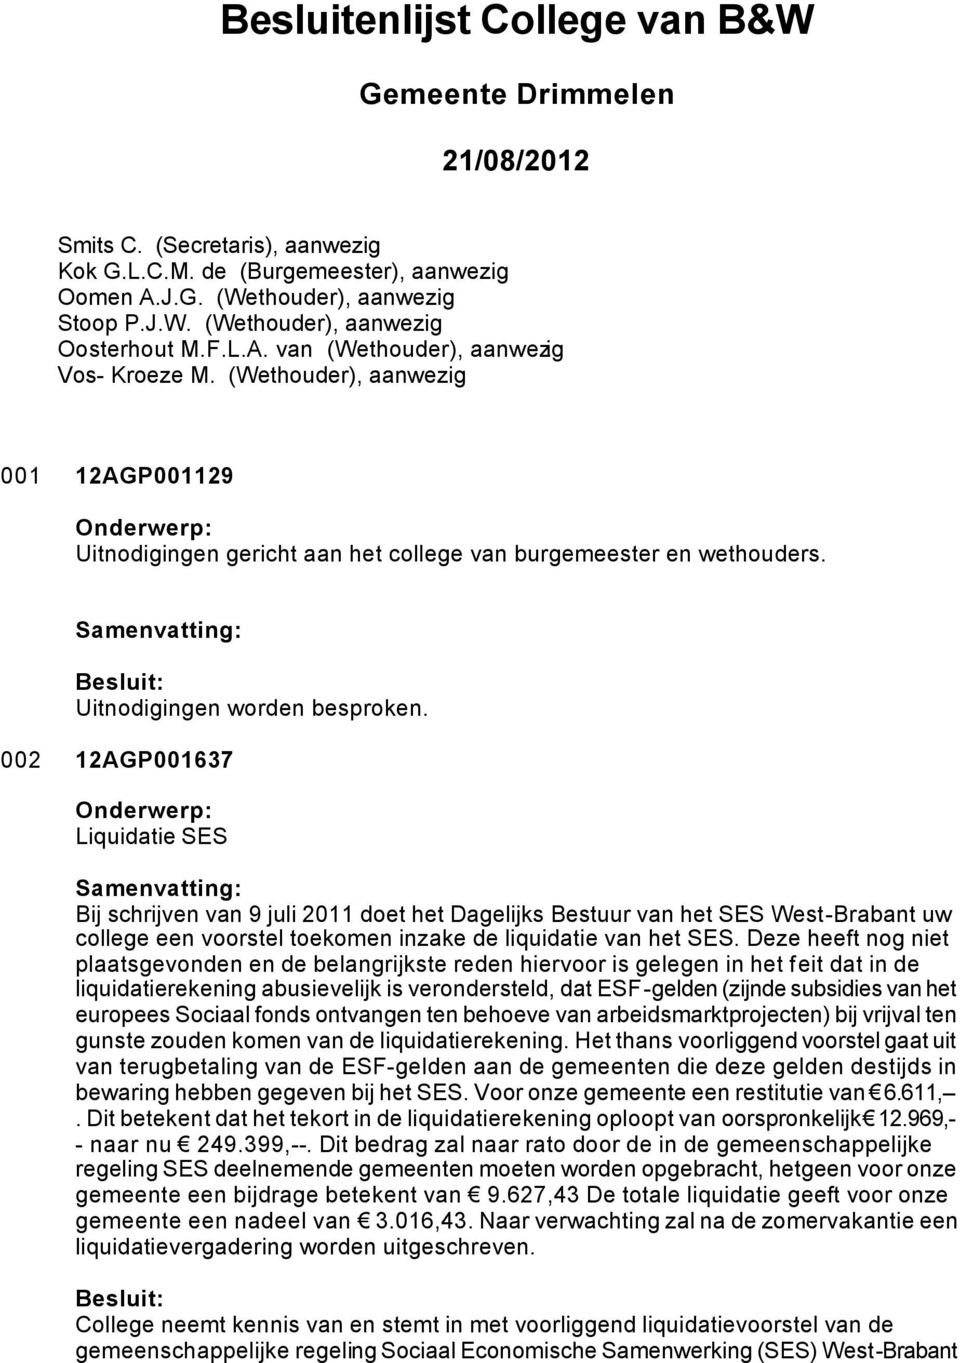 002 12AGP001637 Liquidatie SES Bij schrijven van 9 juli 2011 doet het Dagelijks Bestuur van het SES West-Brabant uw college een voorstel toekomen inzake de liquidatie van het SES.